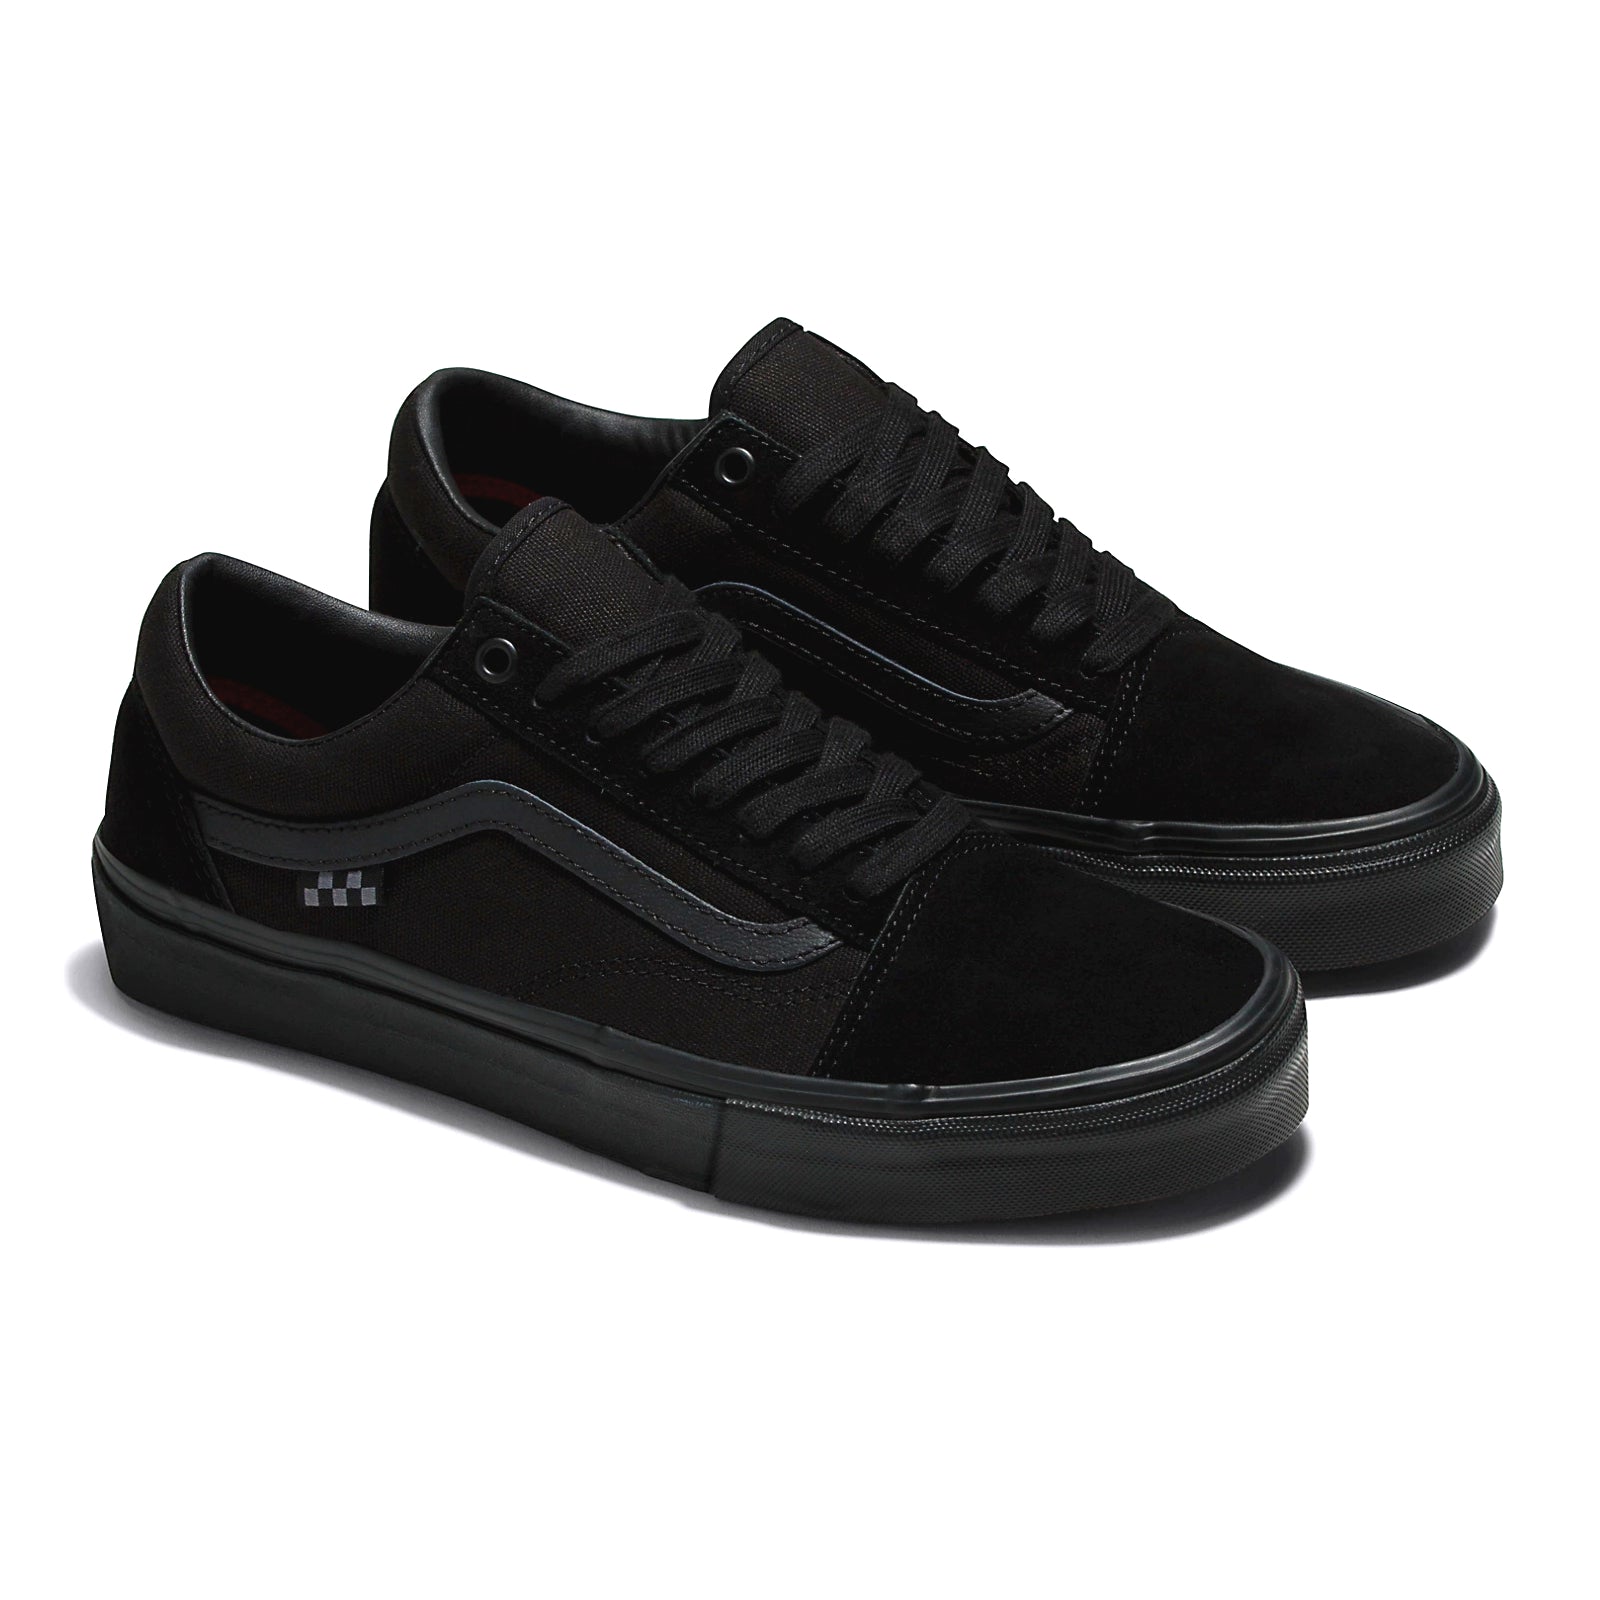 Black/Black Vans Skate Old Skool Skate Shoes